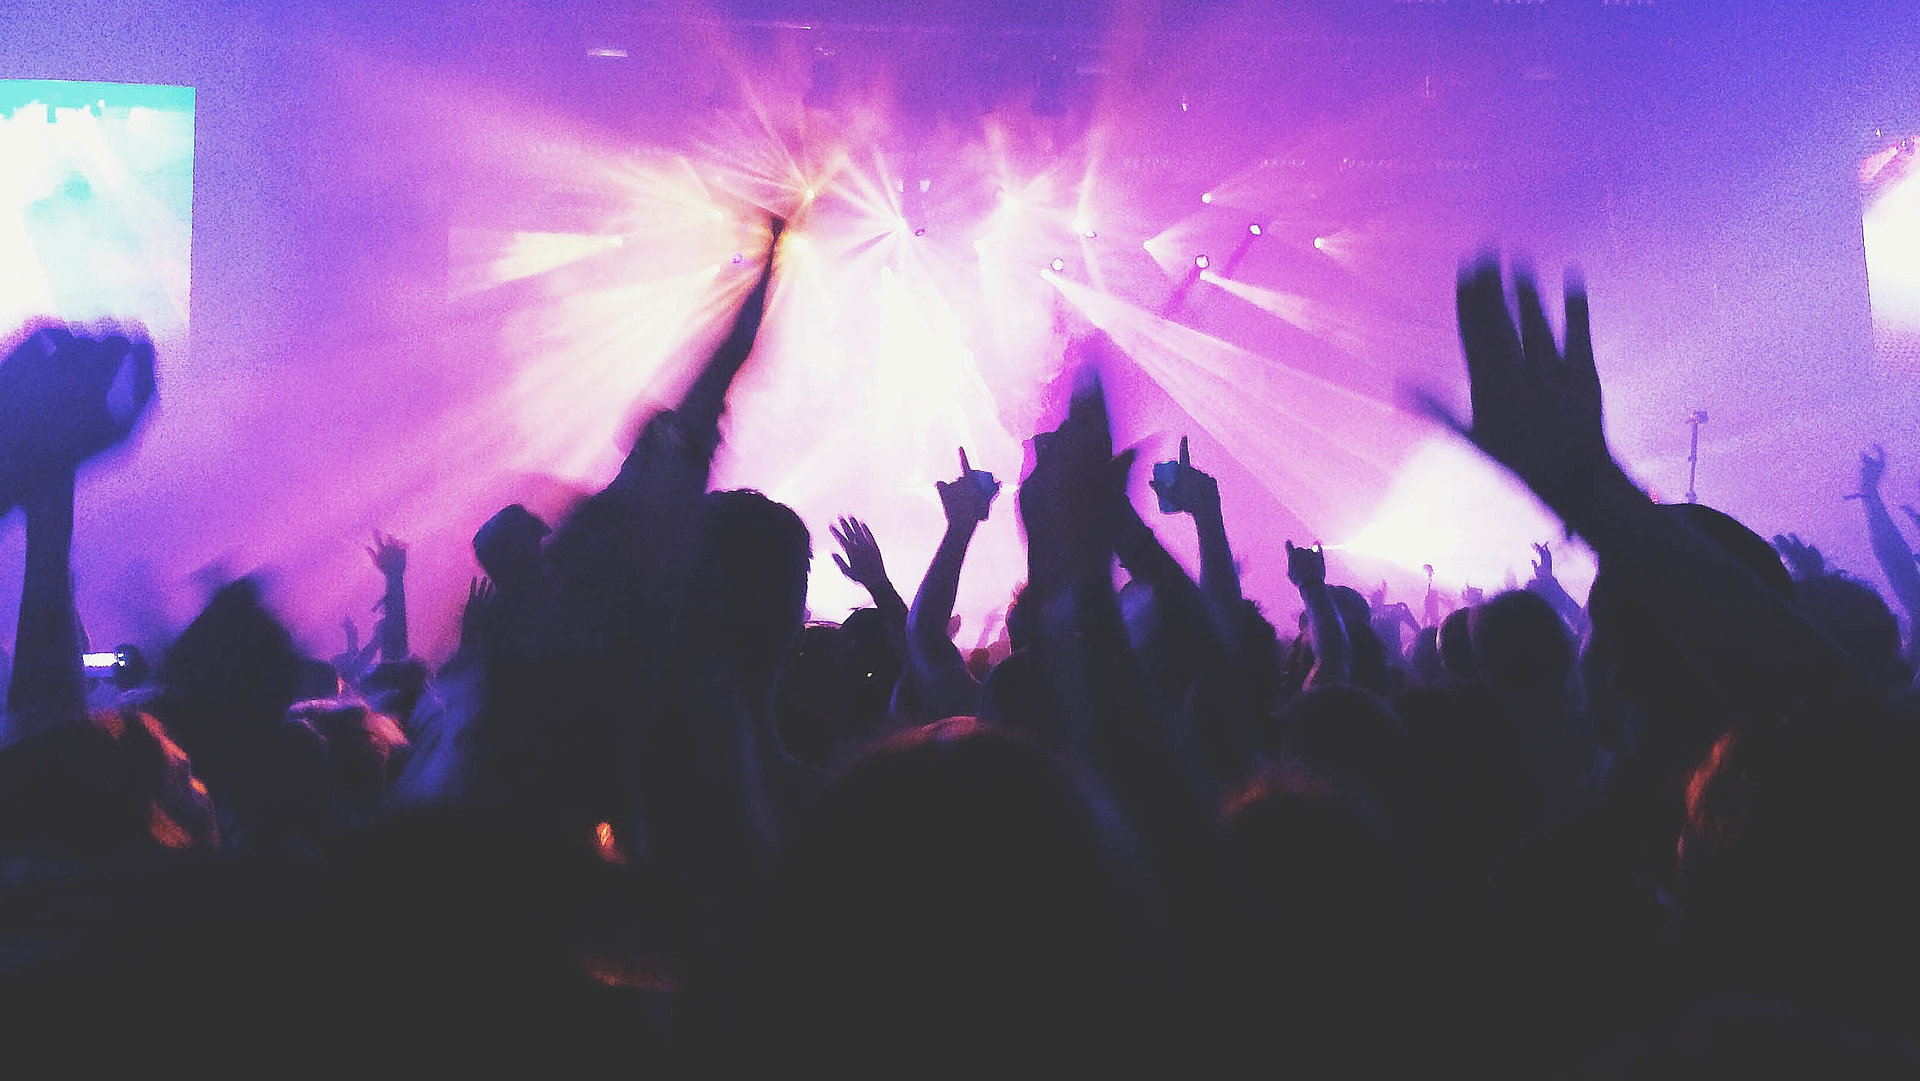 Events und Veranstaltungen in Franken - in einem Club; viele Silhouetten feiern im violetten Scheinwerferlicht